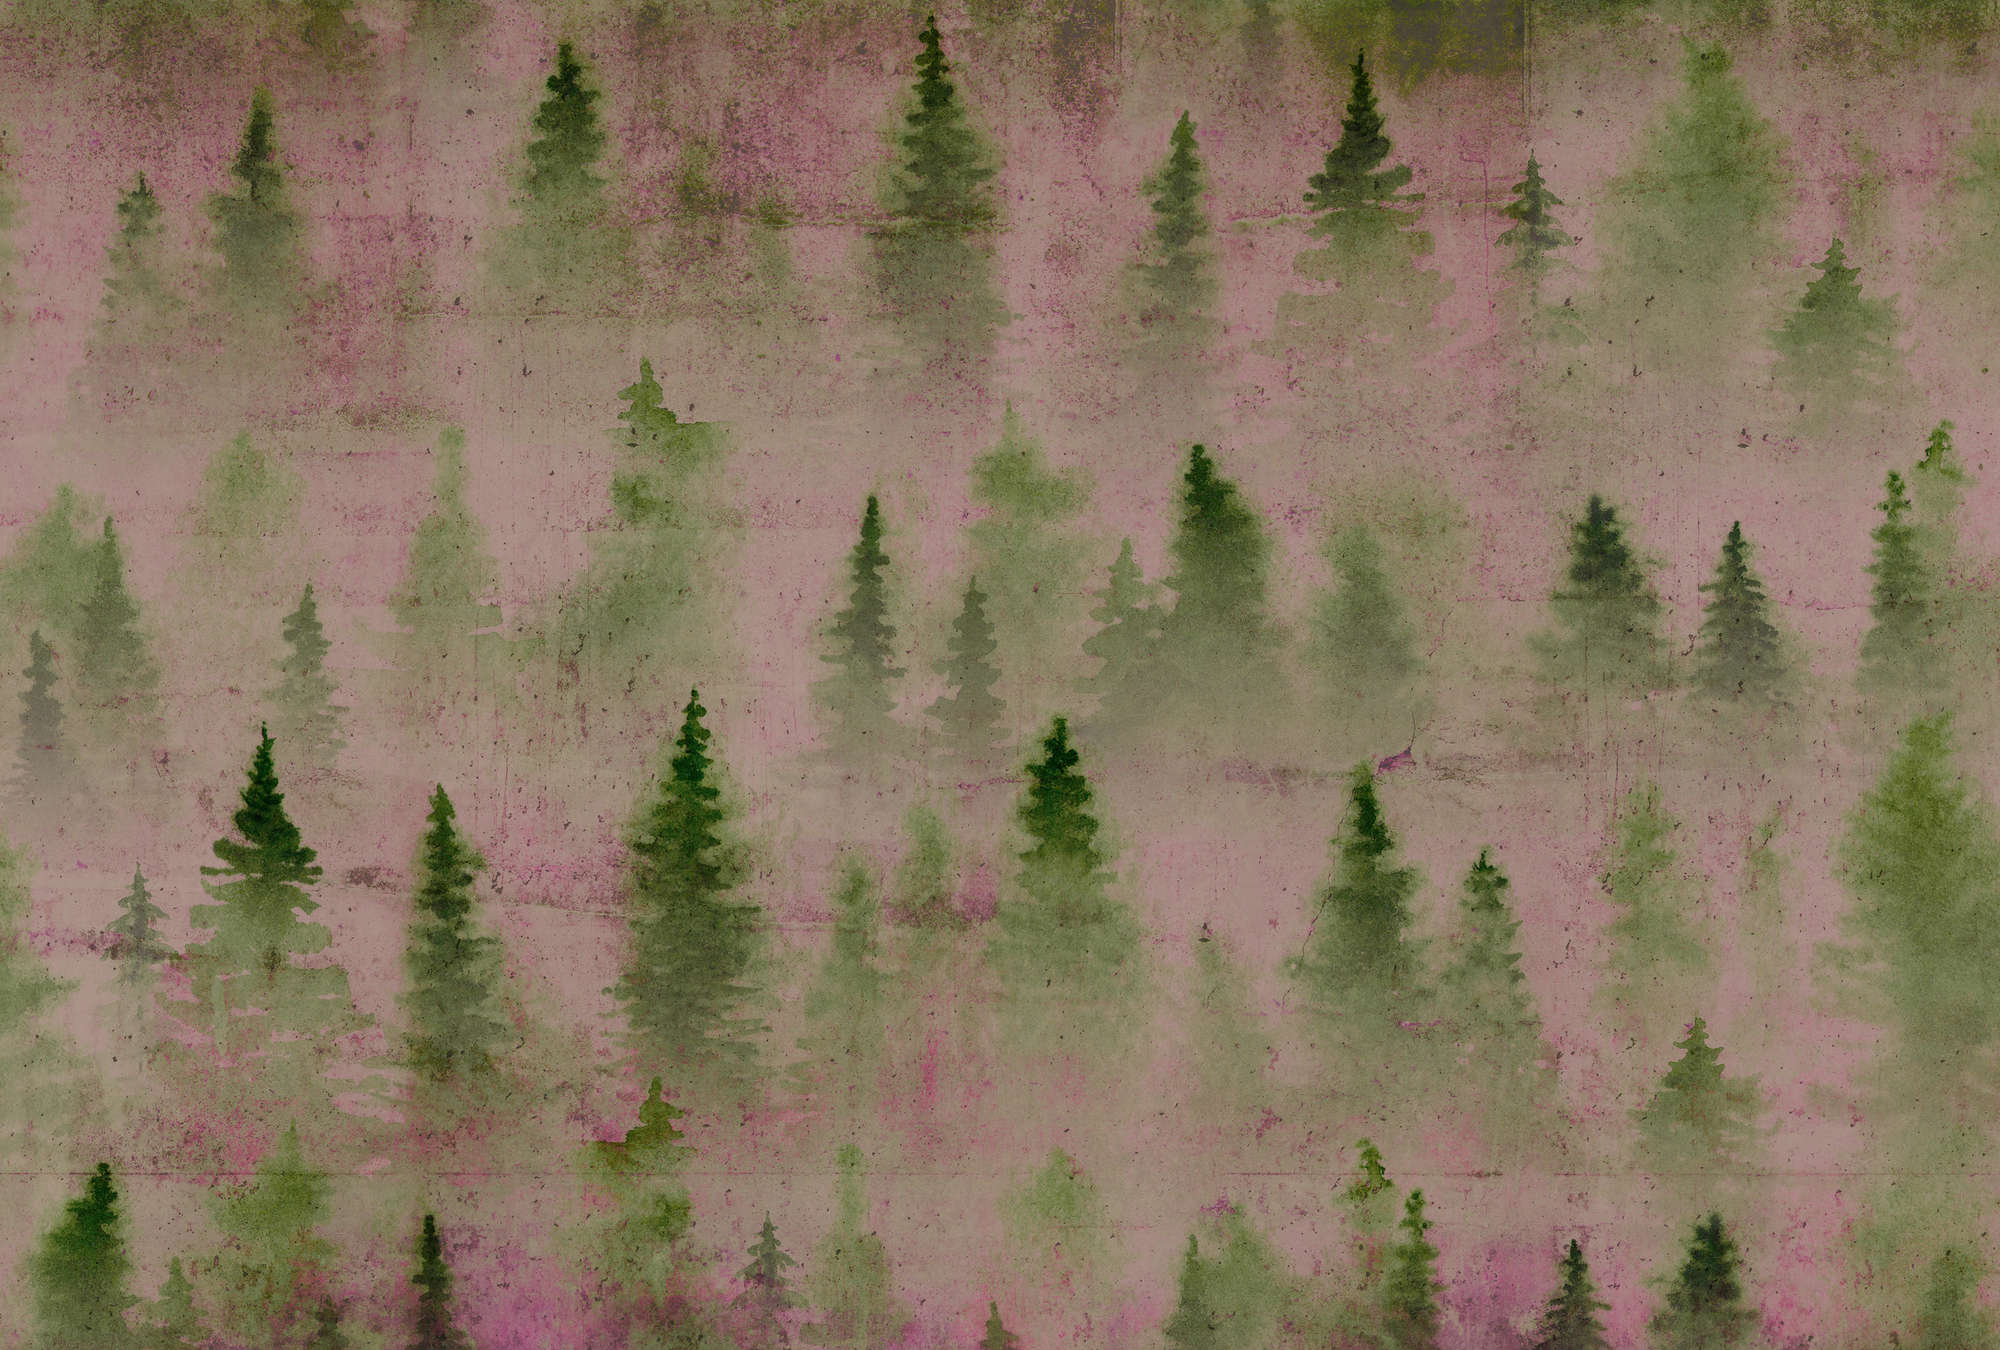             Mural de pared de hormigón con la moda del bosque y el aspecto usado - verde, púrpura, rosa
        